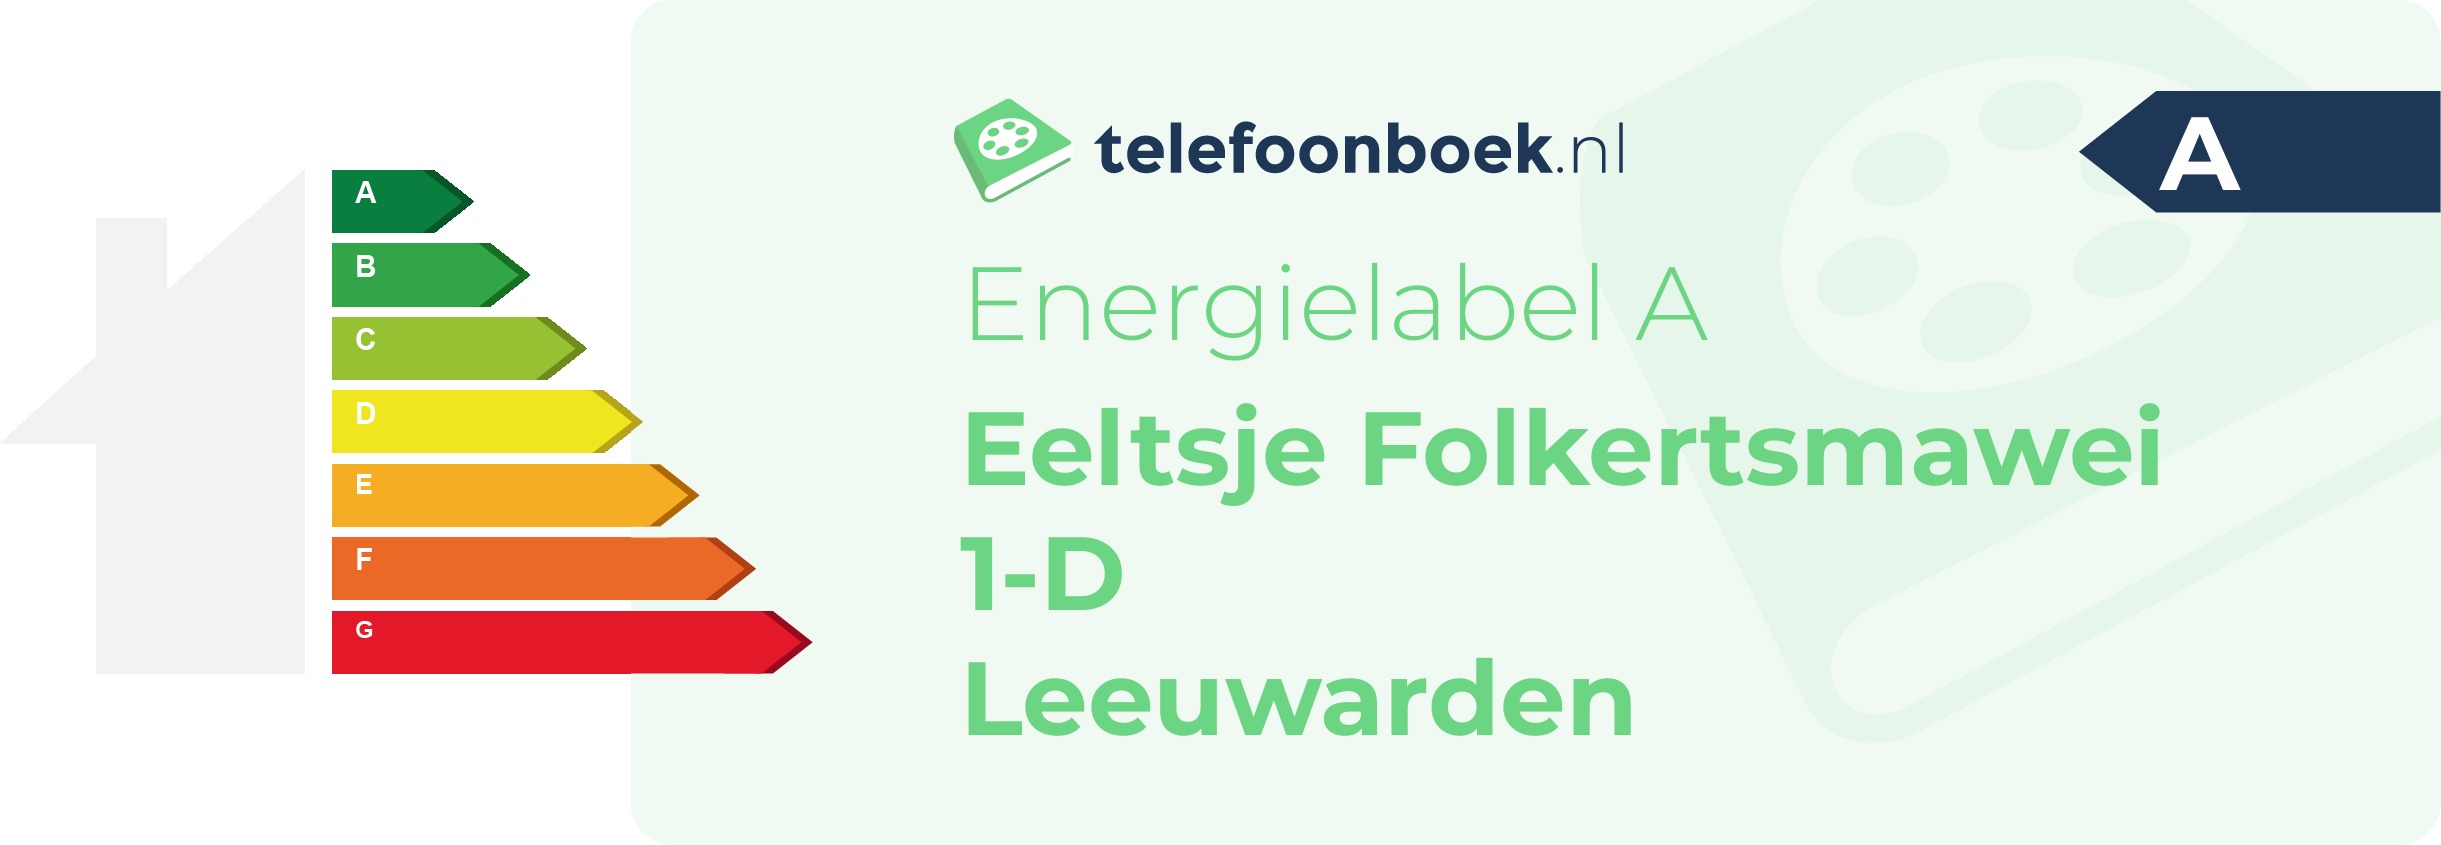 Energielabel Eeltsje Folkertsmawei 1-D Leeuwarden